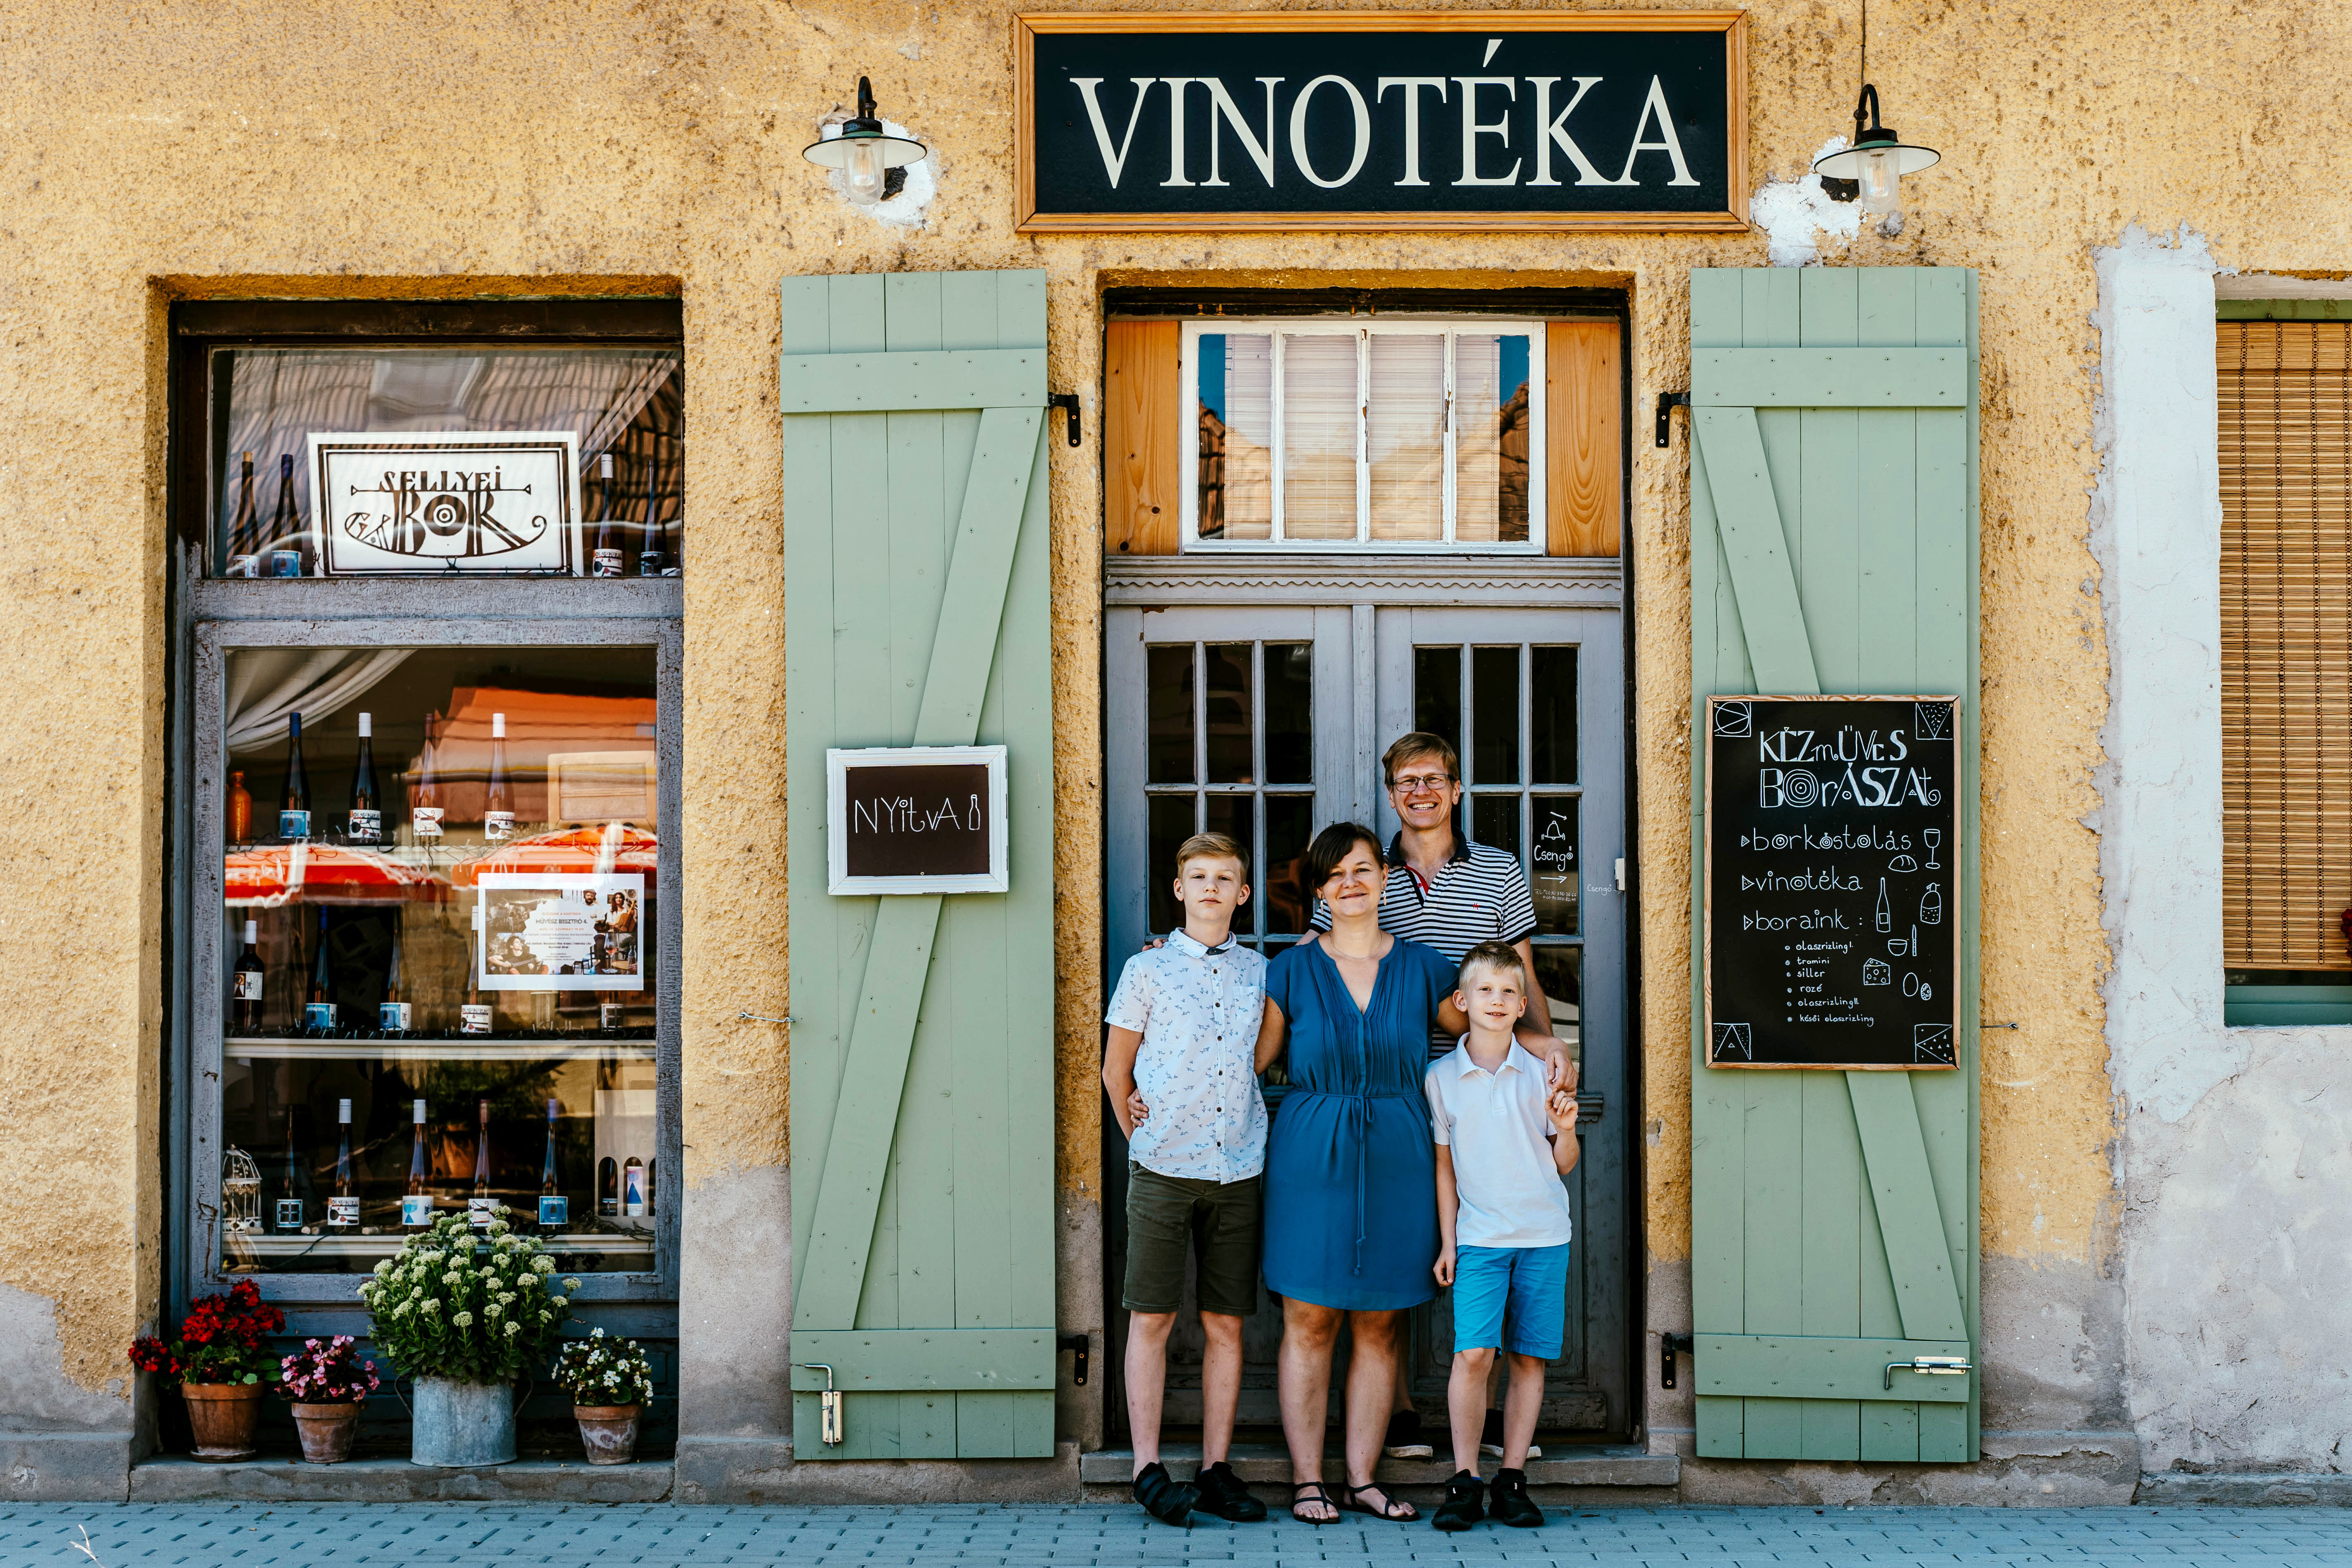 Szatócsboltból varázslatos vinotéka – Megnéztük a Sellyei család kézműves borászatát